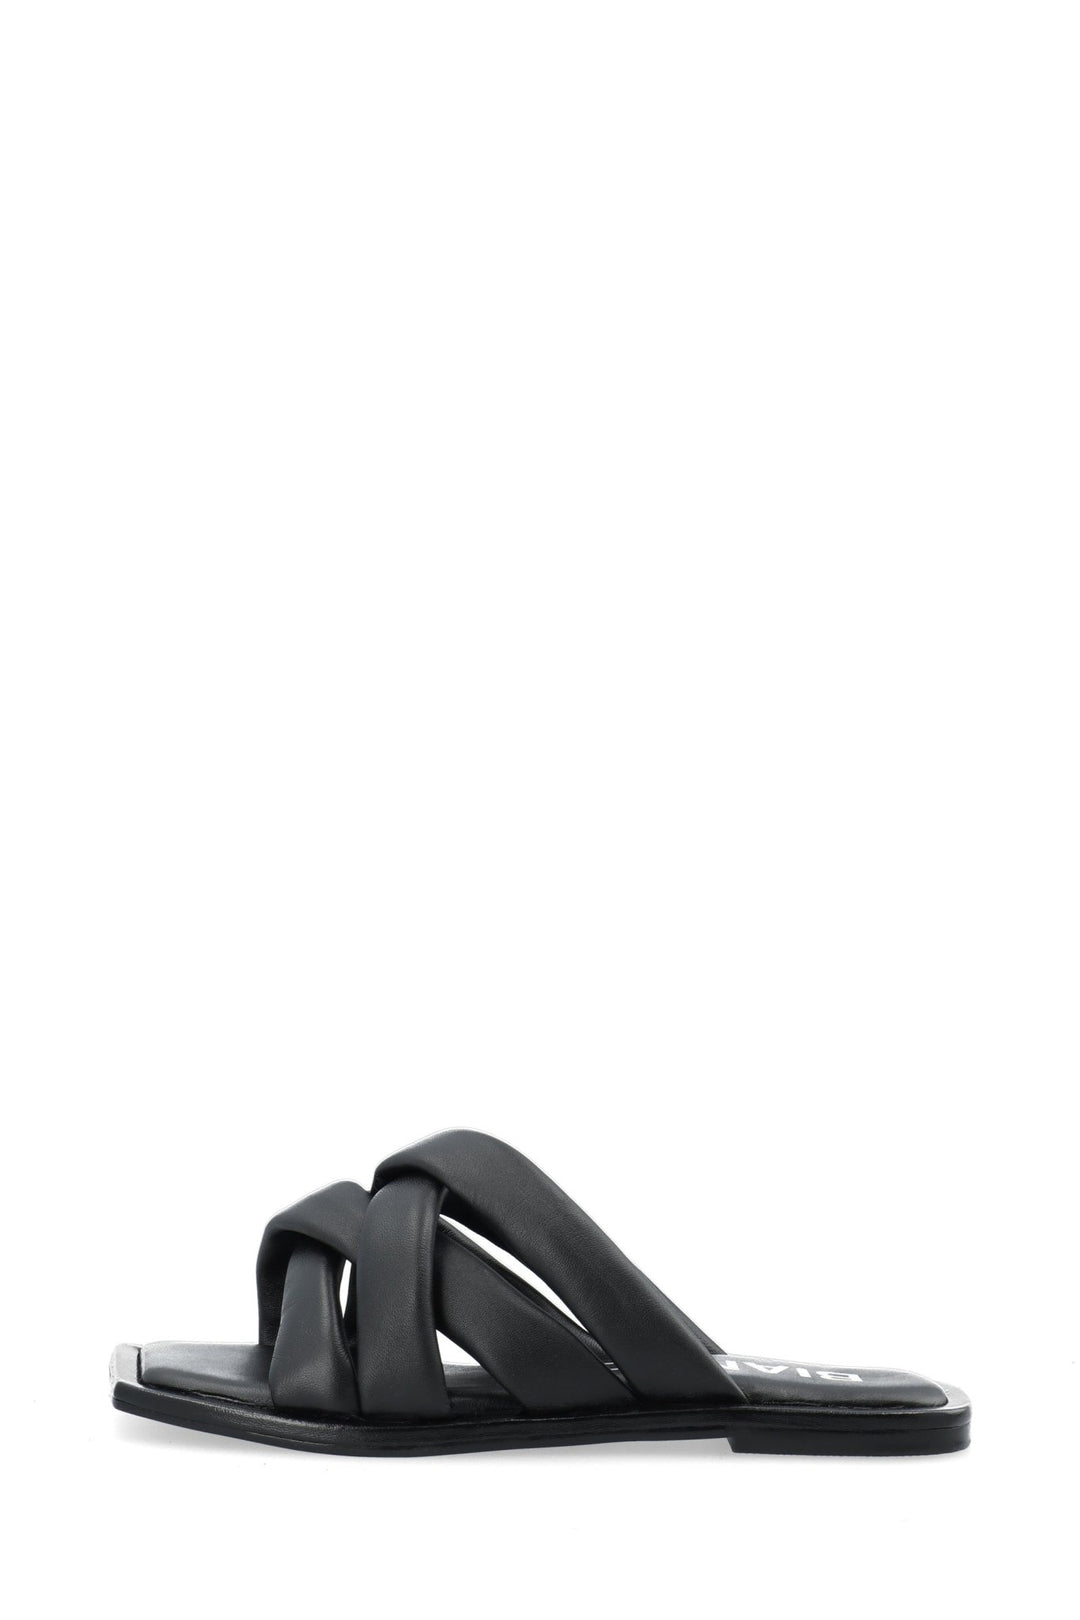 Bialillie Padded Cross Slide Smooth Leather Black | Sko | Smuk - Dameklær på nett